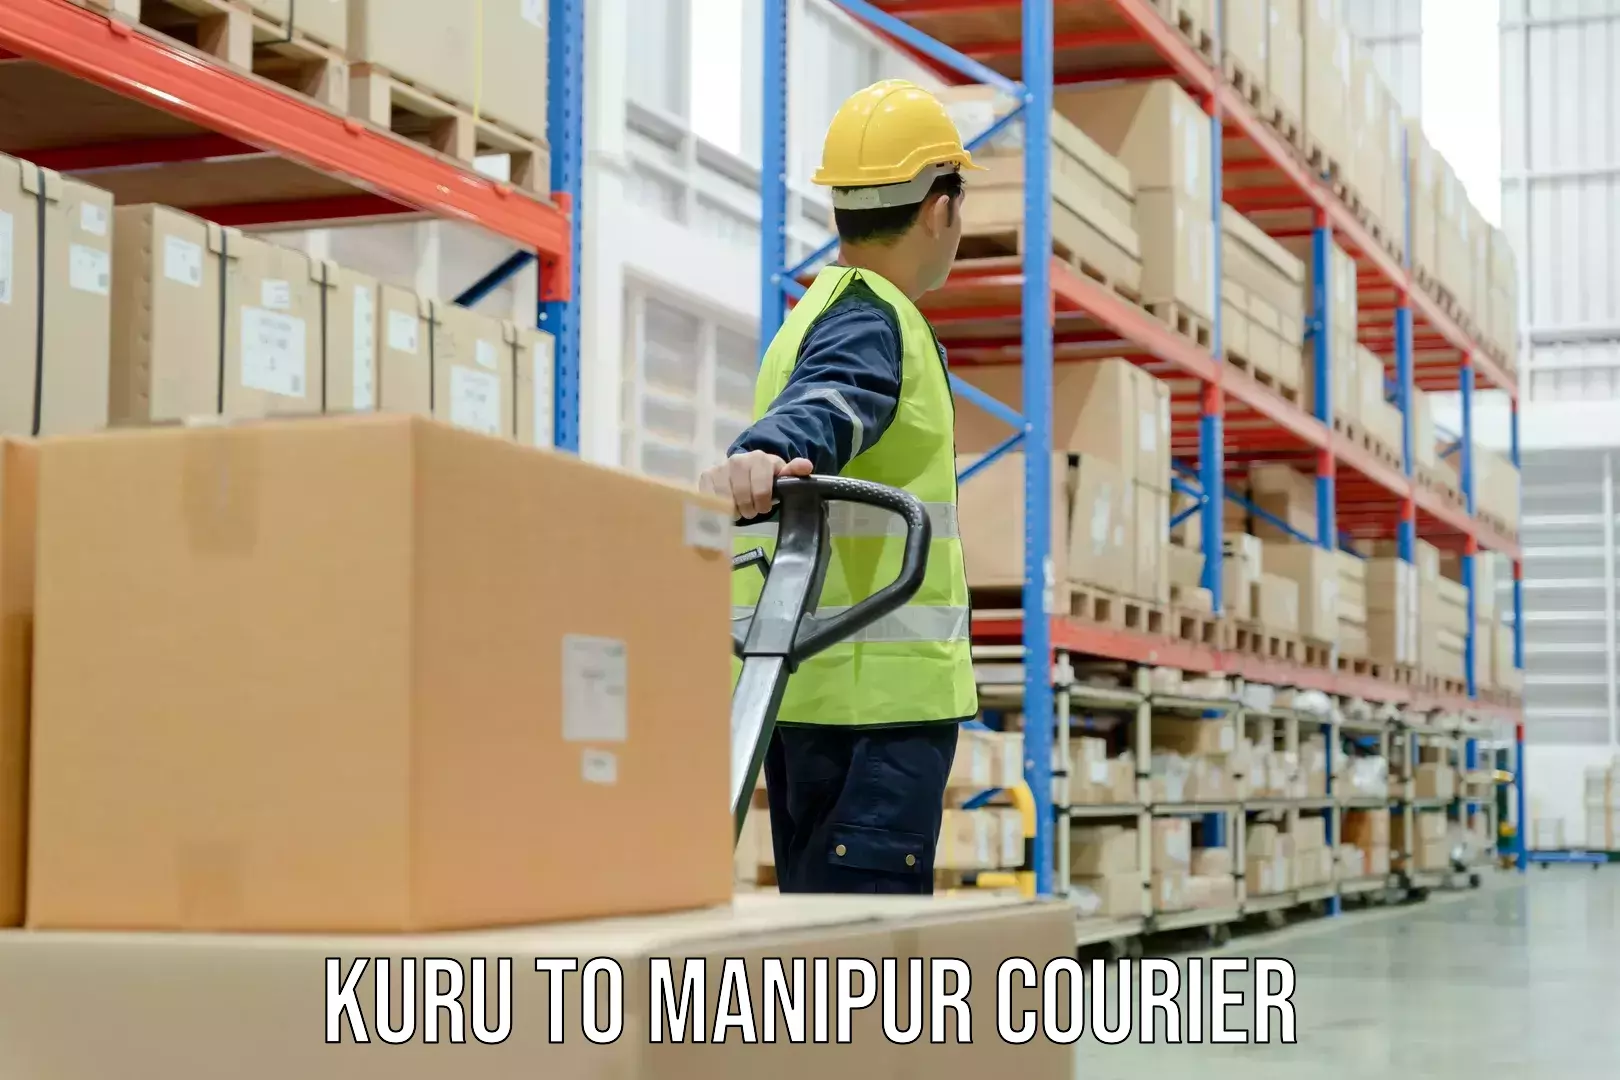 24/7 courier service Kuru to Manipur